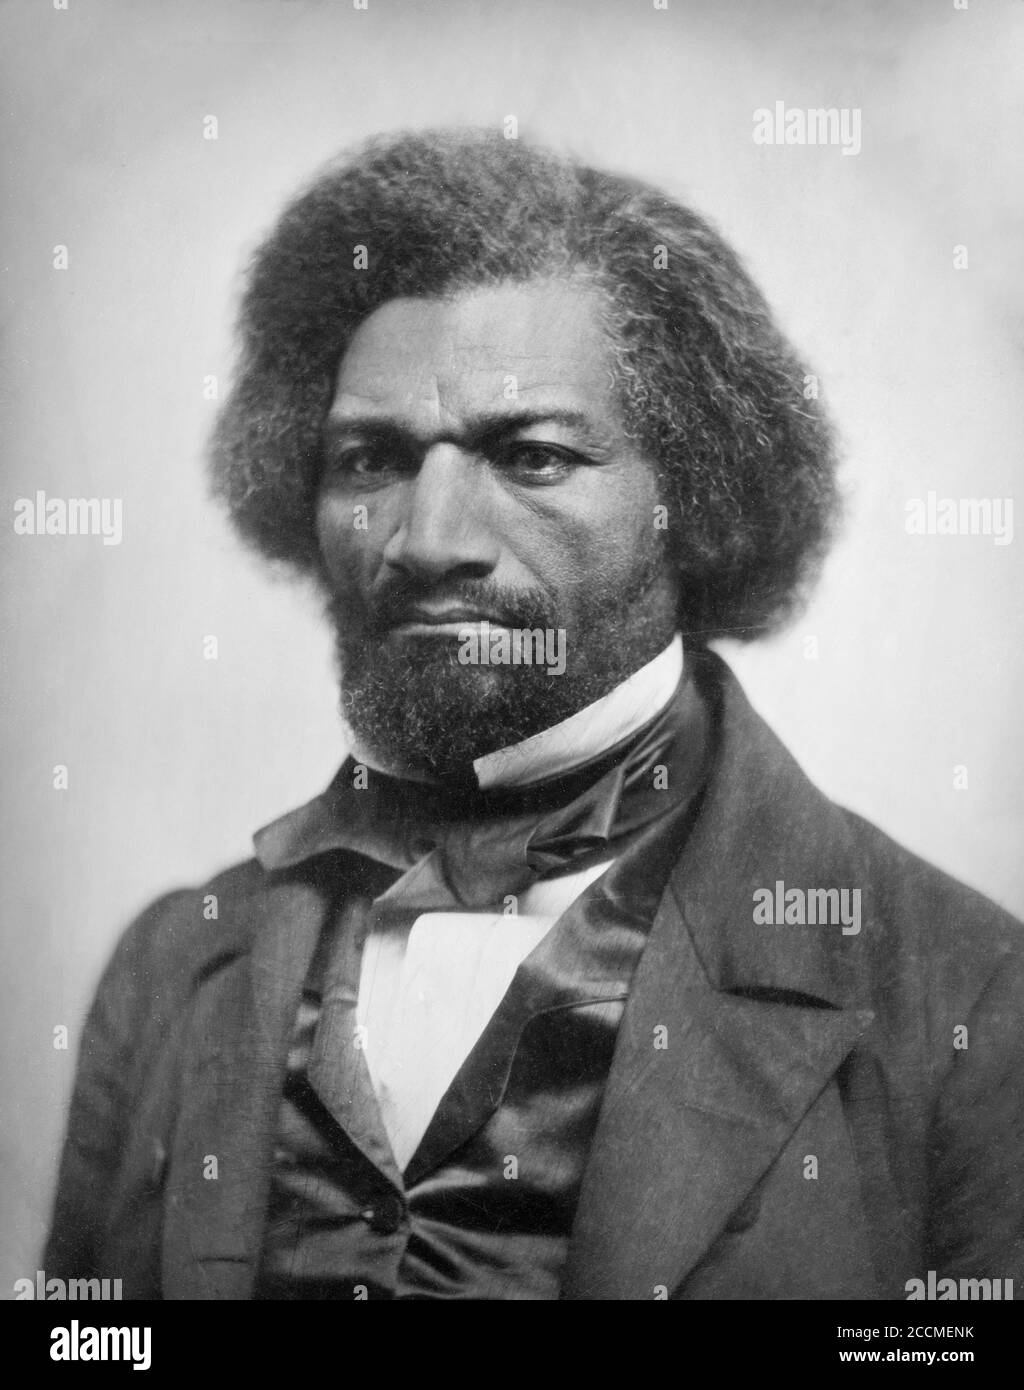 Ritratto di Frederick Douglass, daguerrotype, 1856. Douglass (1818-1895), un ex schiavo, era un riformatore sociale americano, abolizionista, oratore, scrittore e statista Foto Stock